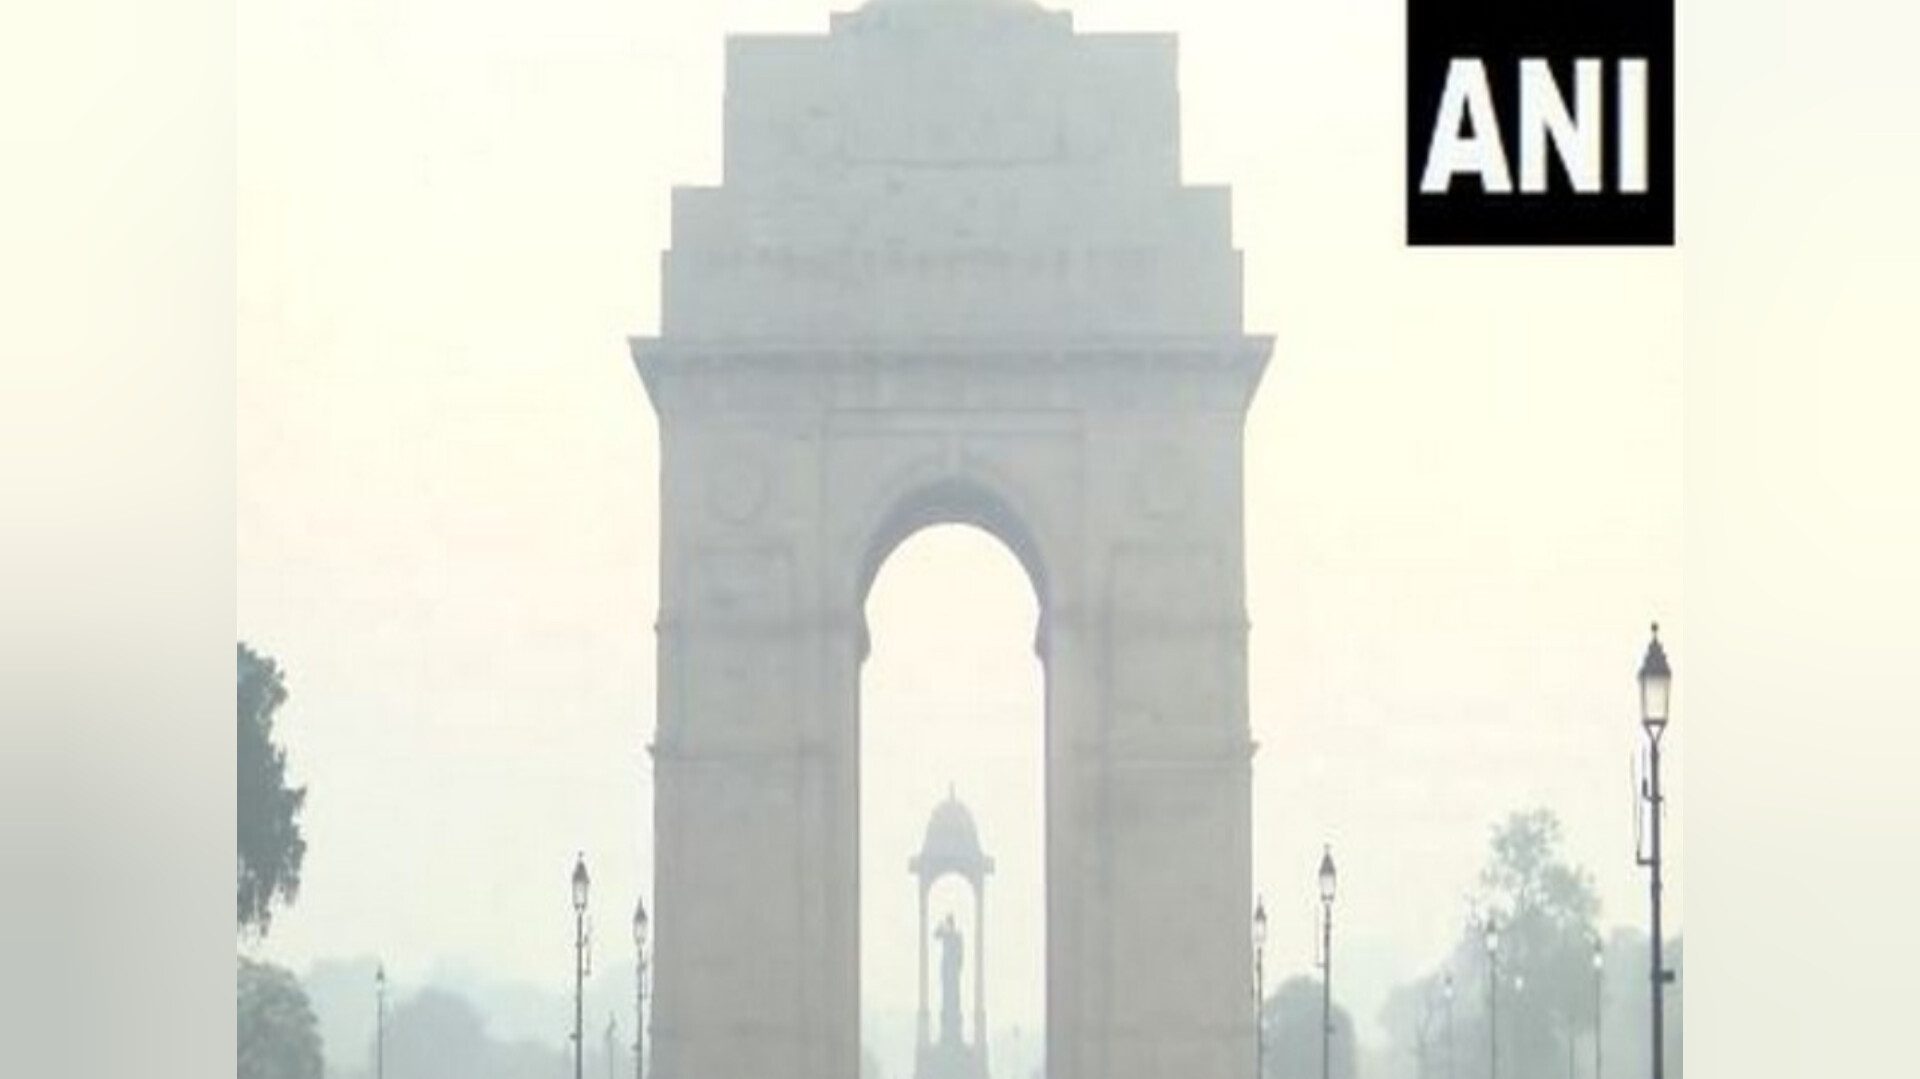 दिल्ली के अधिकांश हिस्सों में हालत अब भी खस्ता, वायु गुणवत्ता 'बहुत खराब' श्रेणी में दर्ज